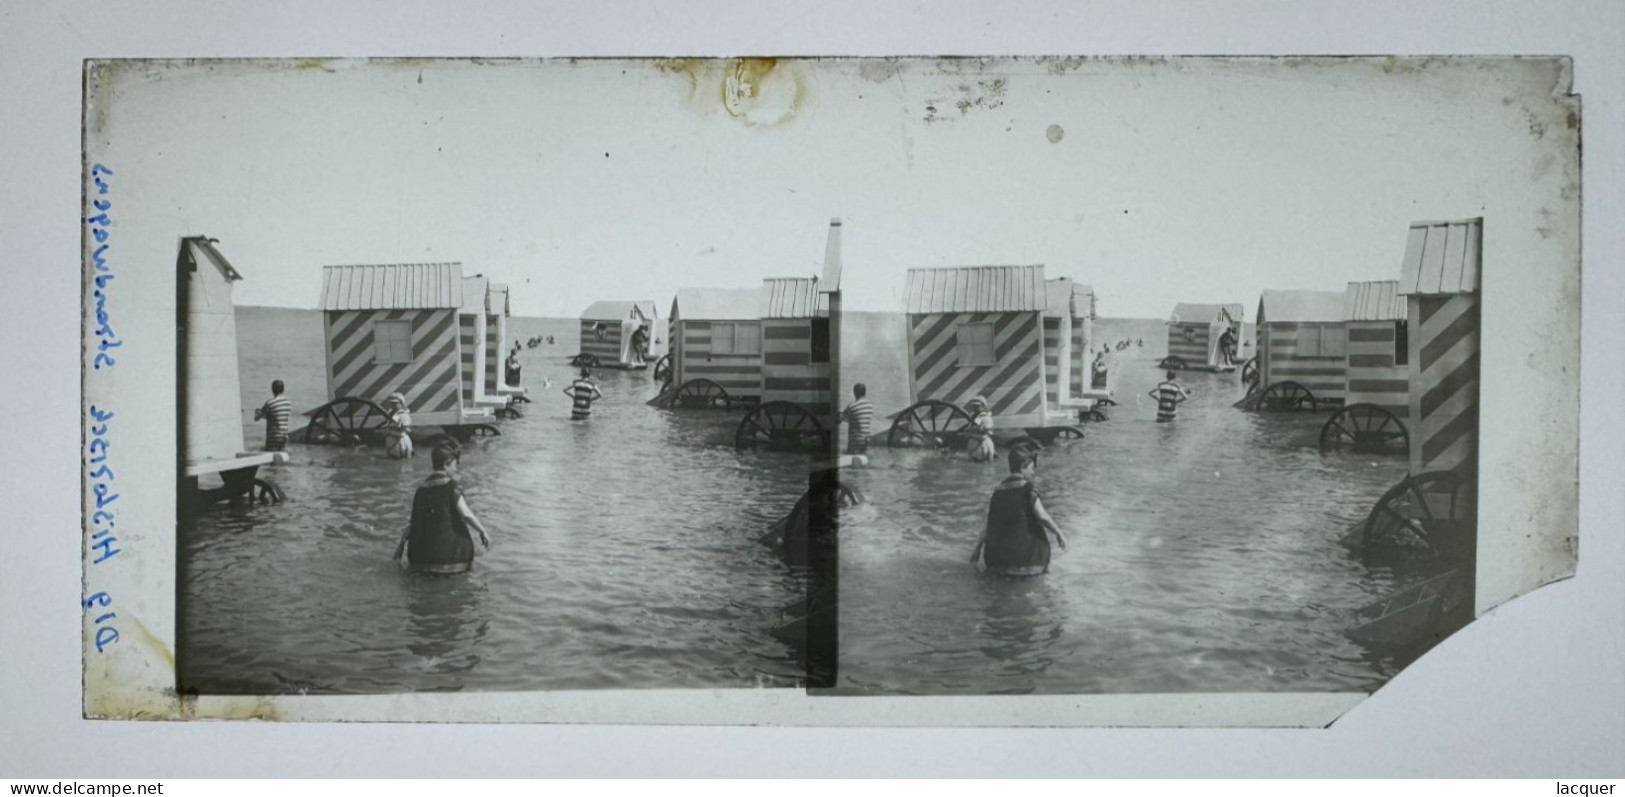 Collection de 6 photographies stéréo sur verre de la vie sur la plage à Ostende, Belgique v. 1900 8,5 x 17,5 cm